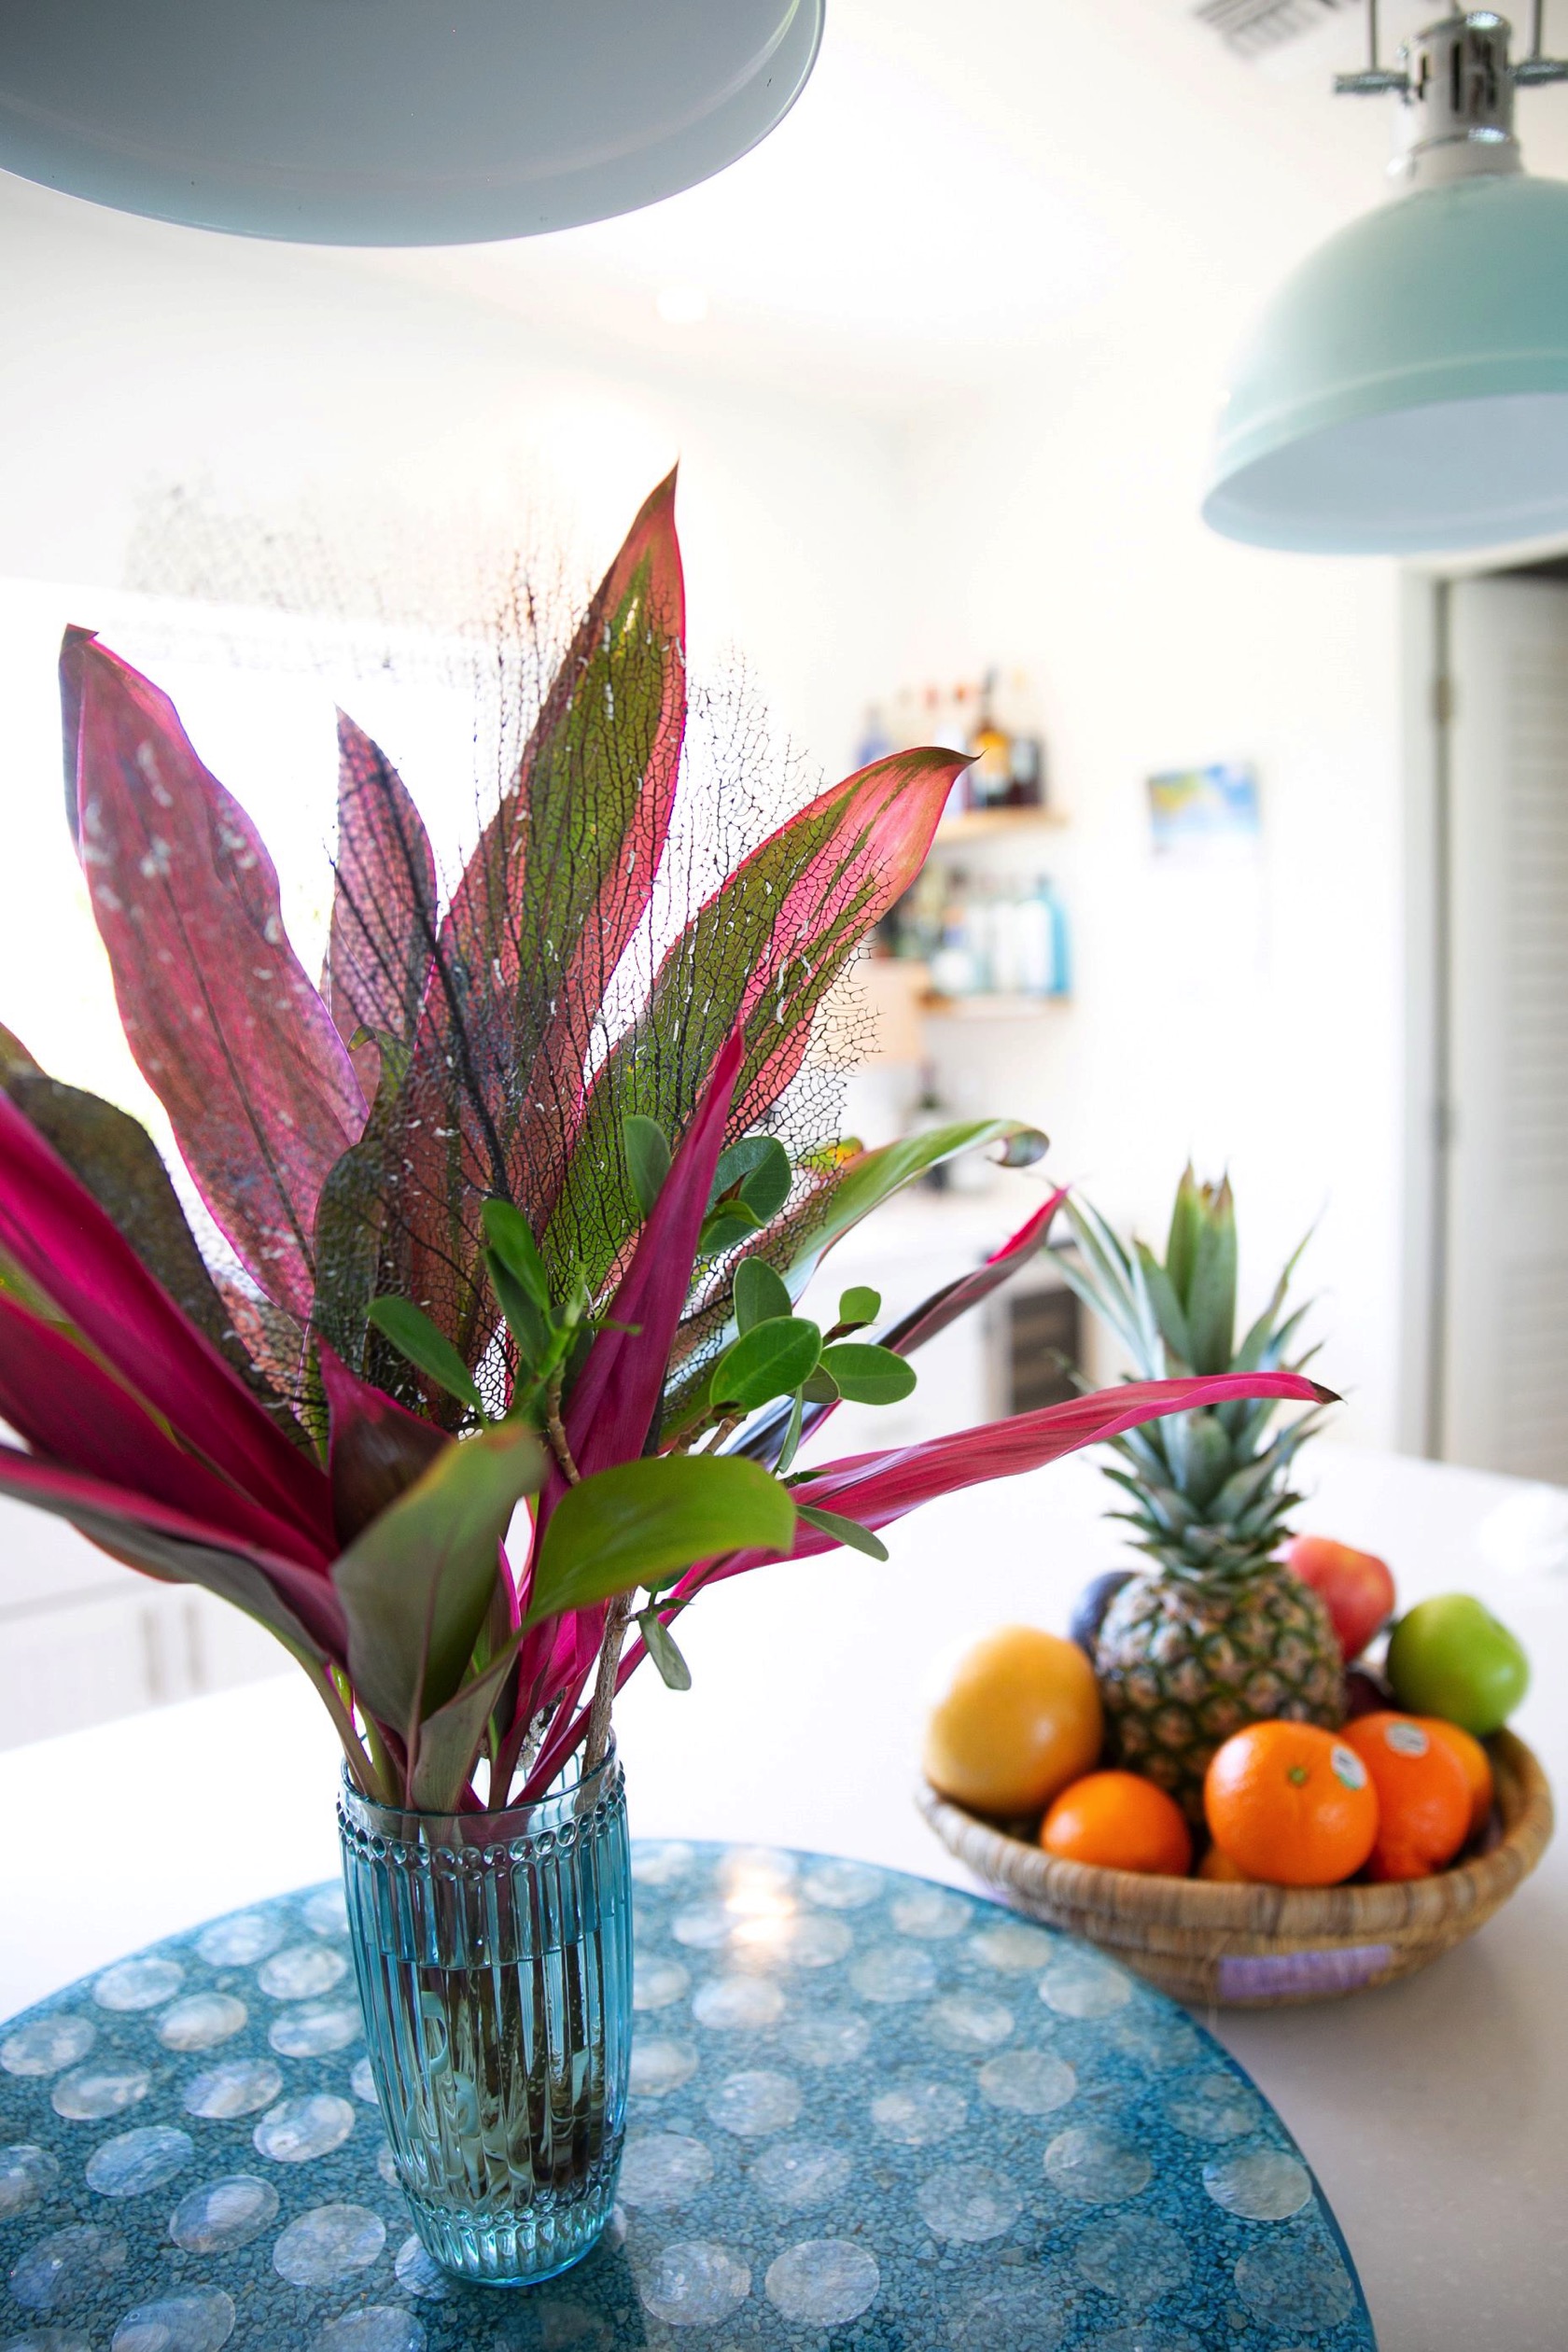 Plants-and-Fruits-Bahari-house-Great-Exuma-Bahamas